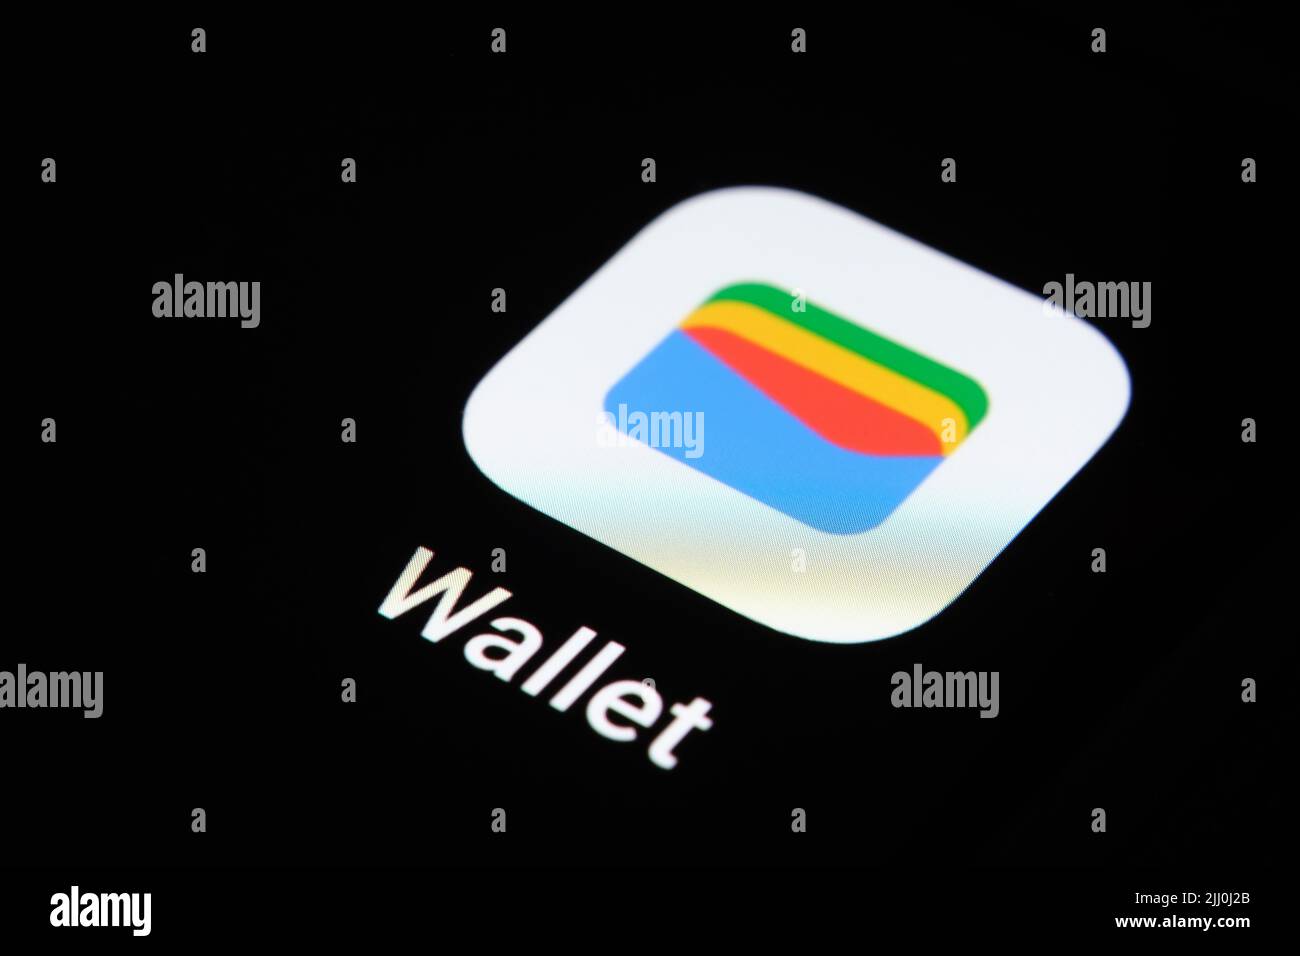 Nouvelle application Google Wallet affichée sur l'écran du smartphone. Google Pay est rebaptisé Google Wallet. Stafford, Royaume-Uni, 21 juillet 2022 Banque D'Images